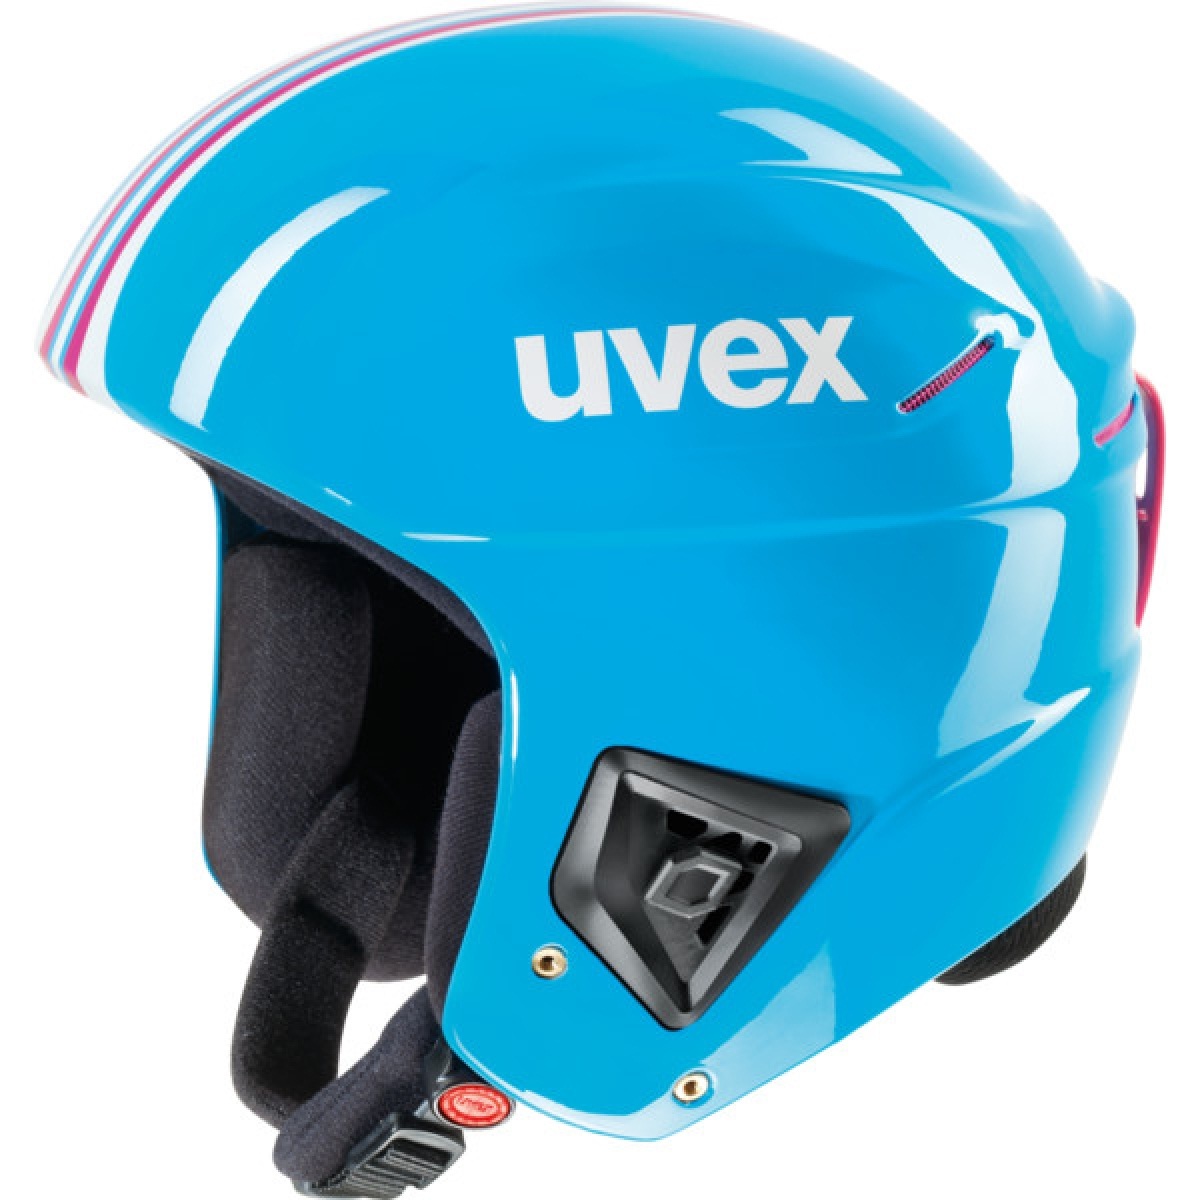 UVEX Race s566172 skihlem para adultos - Artículo nuevo 